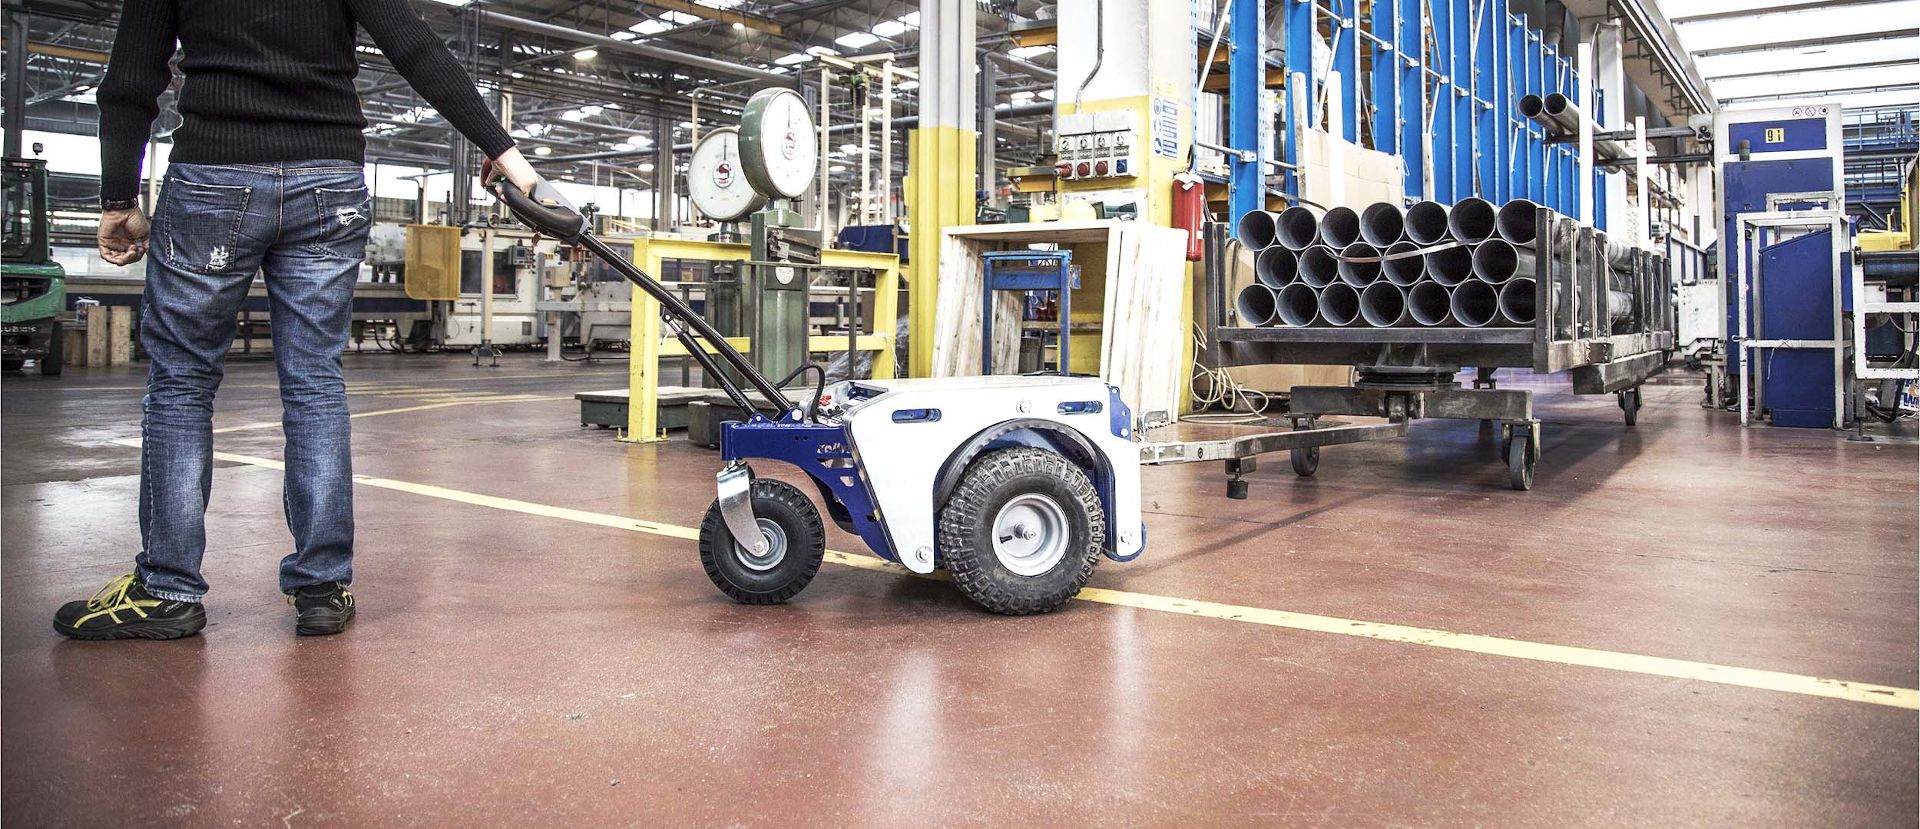 Remorqueur électrique Zallys M4 qui déplaces des chariots à 4 roues transportant tubes en acier dans une industrie manufacturière